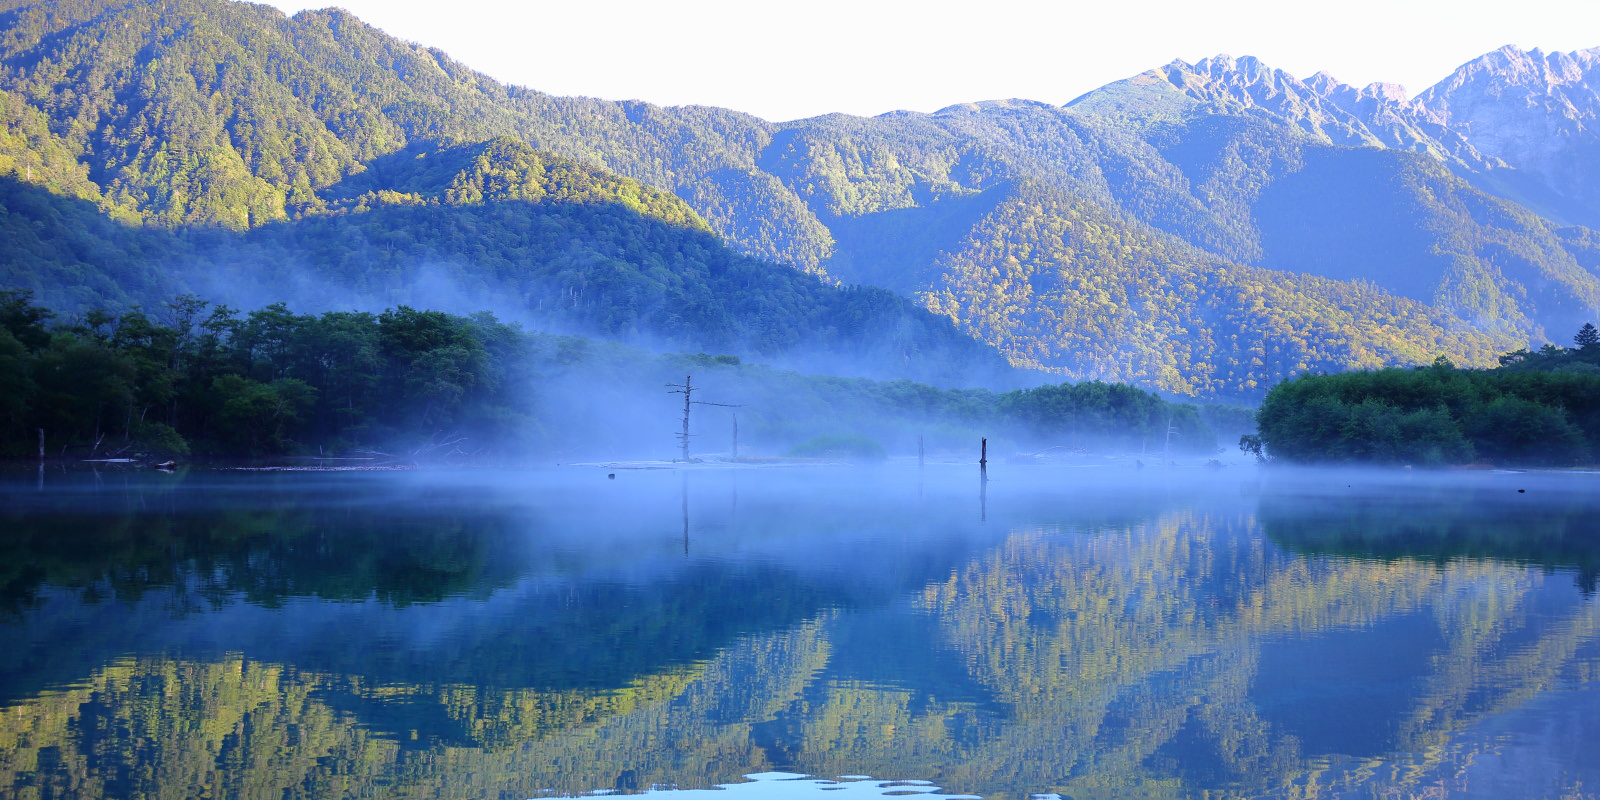 【一個人旅行】長野山行⛰上高地住一晚| 清晨限定的仙境美景❤魔幻大正池